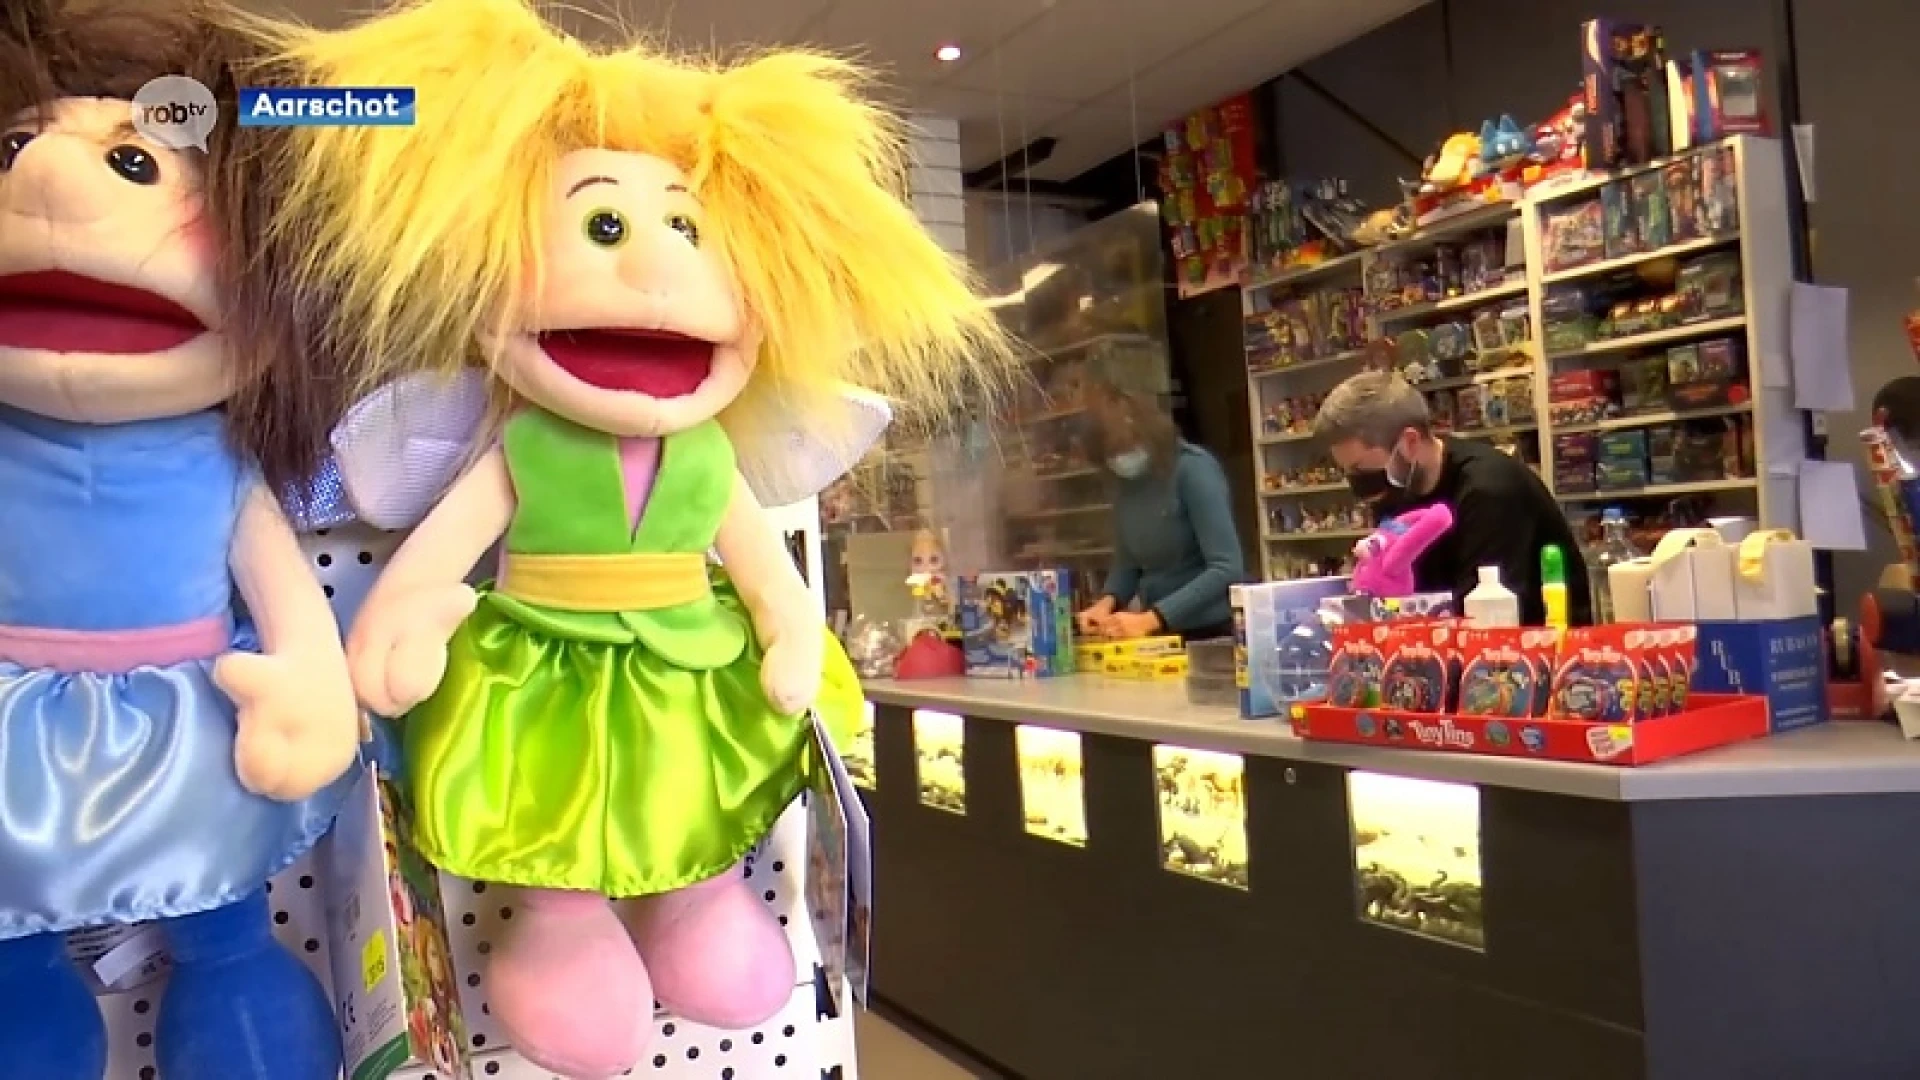 Ook speelgoedwinkels gaan weer open vlak voor Sinterklaas: "Blij dat we weer meer raad kunnen geven"